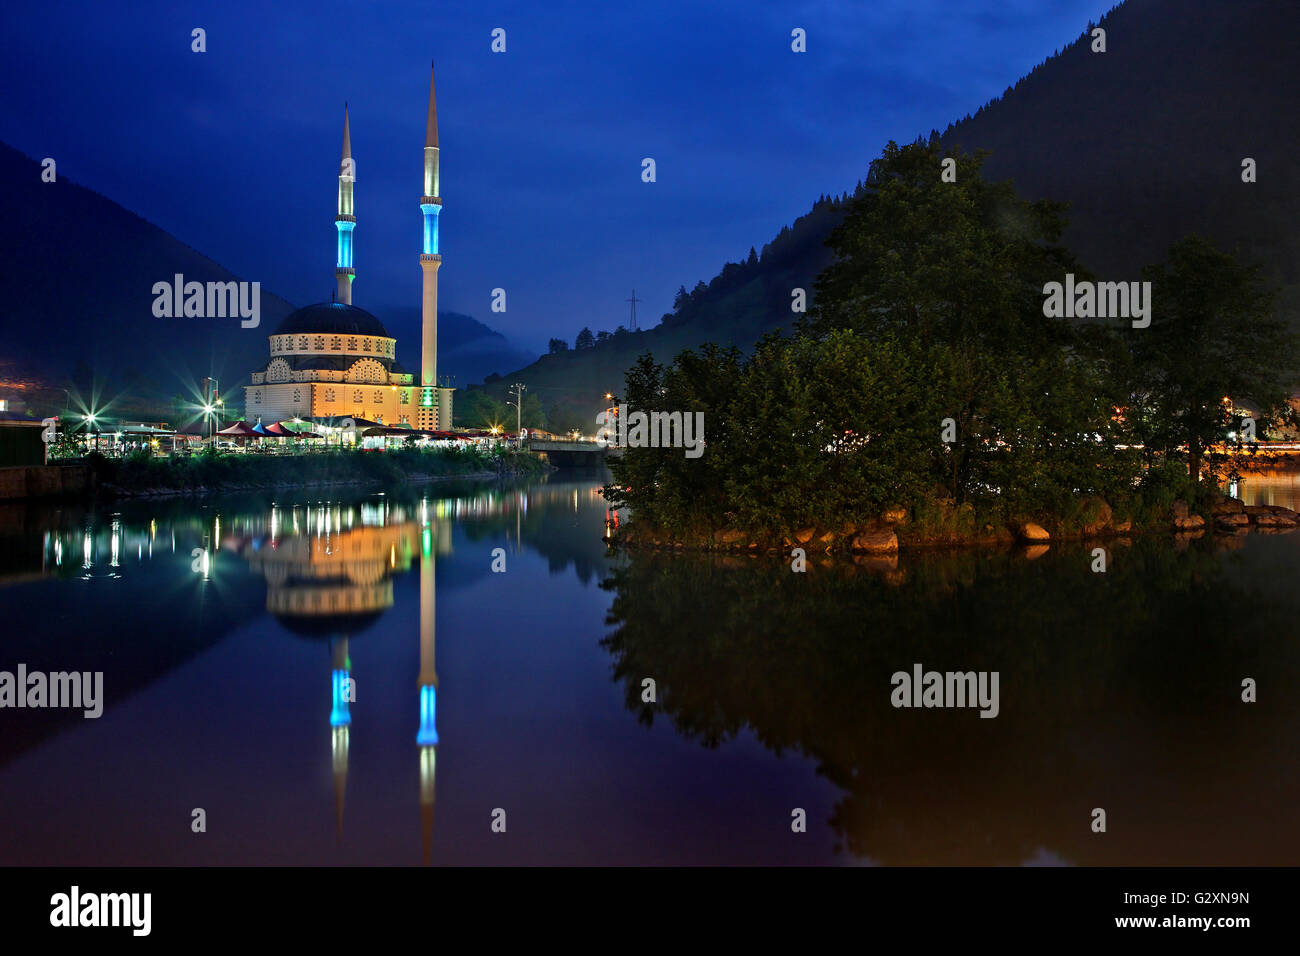 Une mosquée reflète dans Uzun lake, Uzungöl, Trabzon Province, Région de la mer Noire, la Turquie Banque D'Images